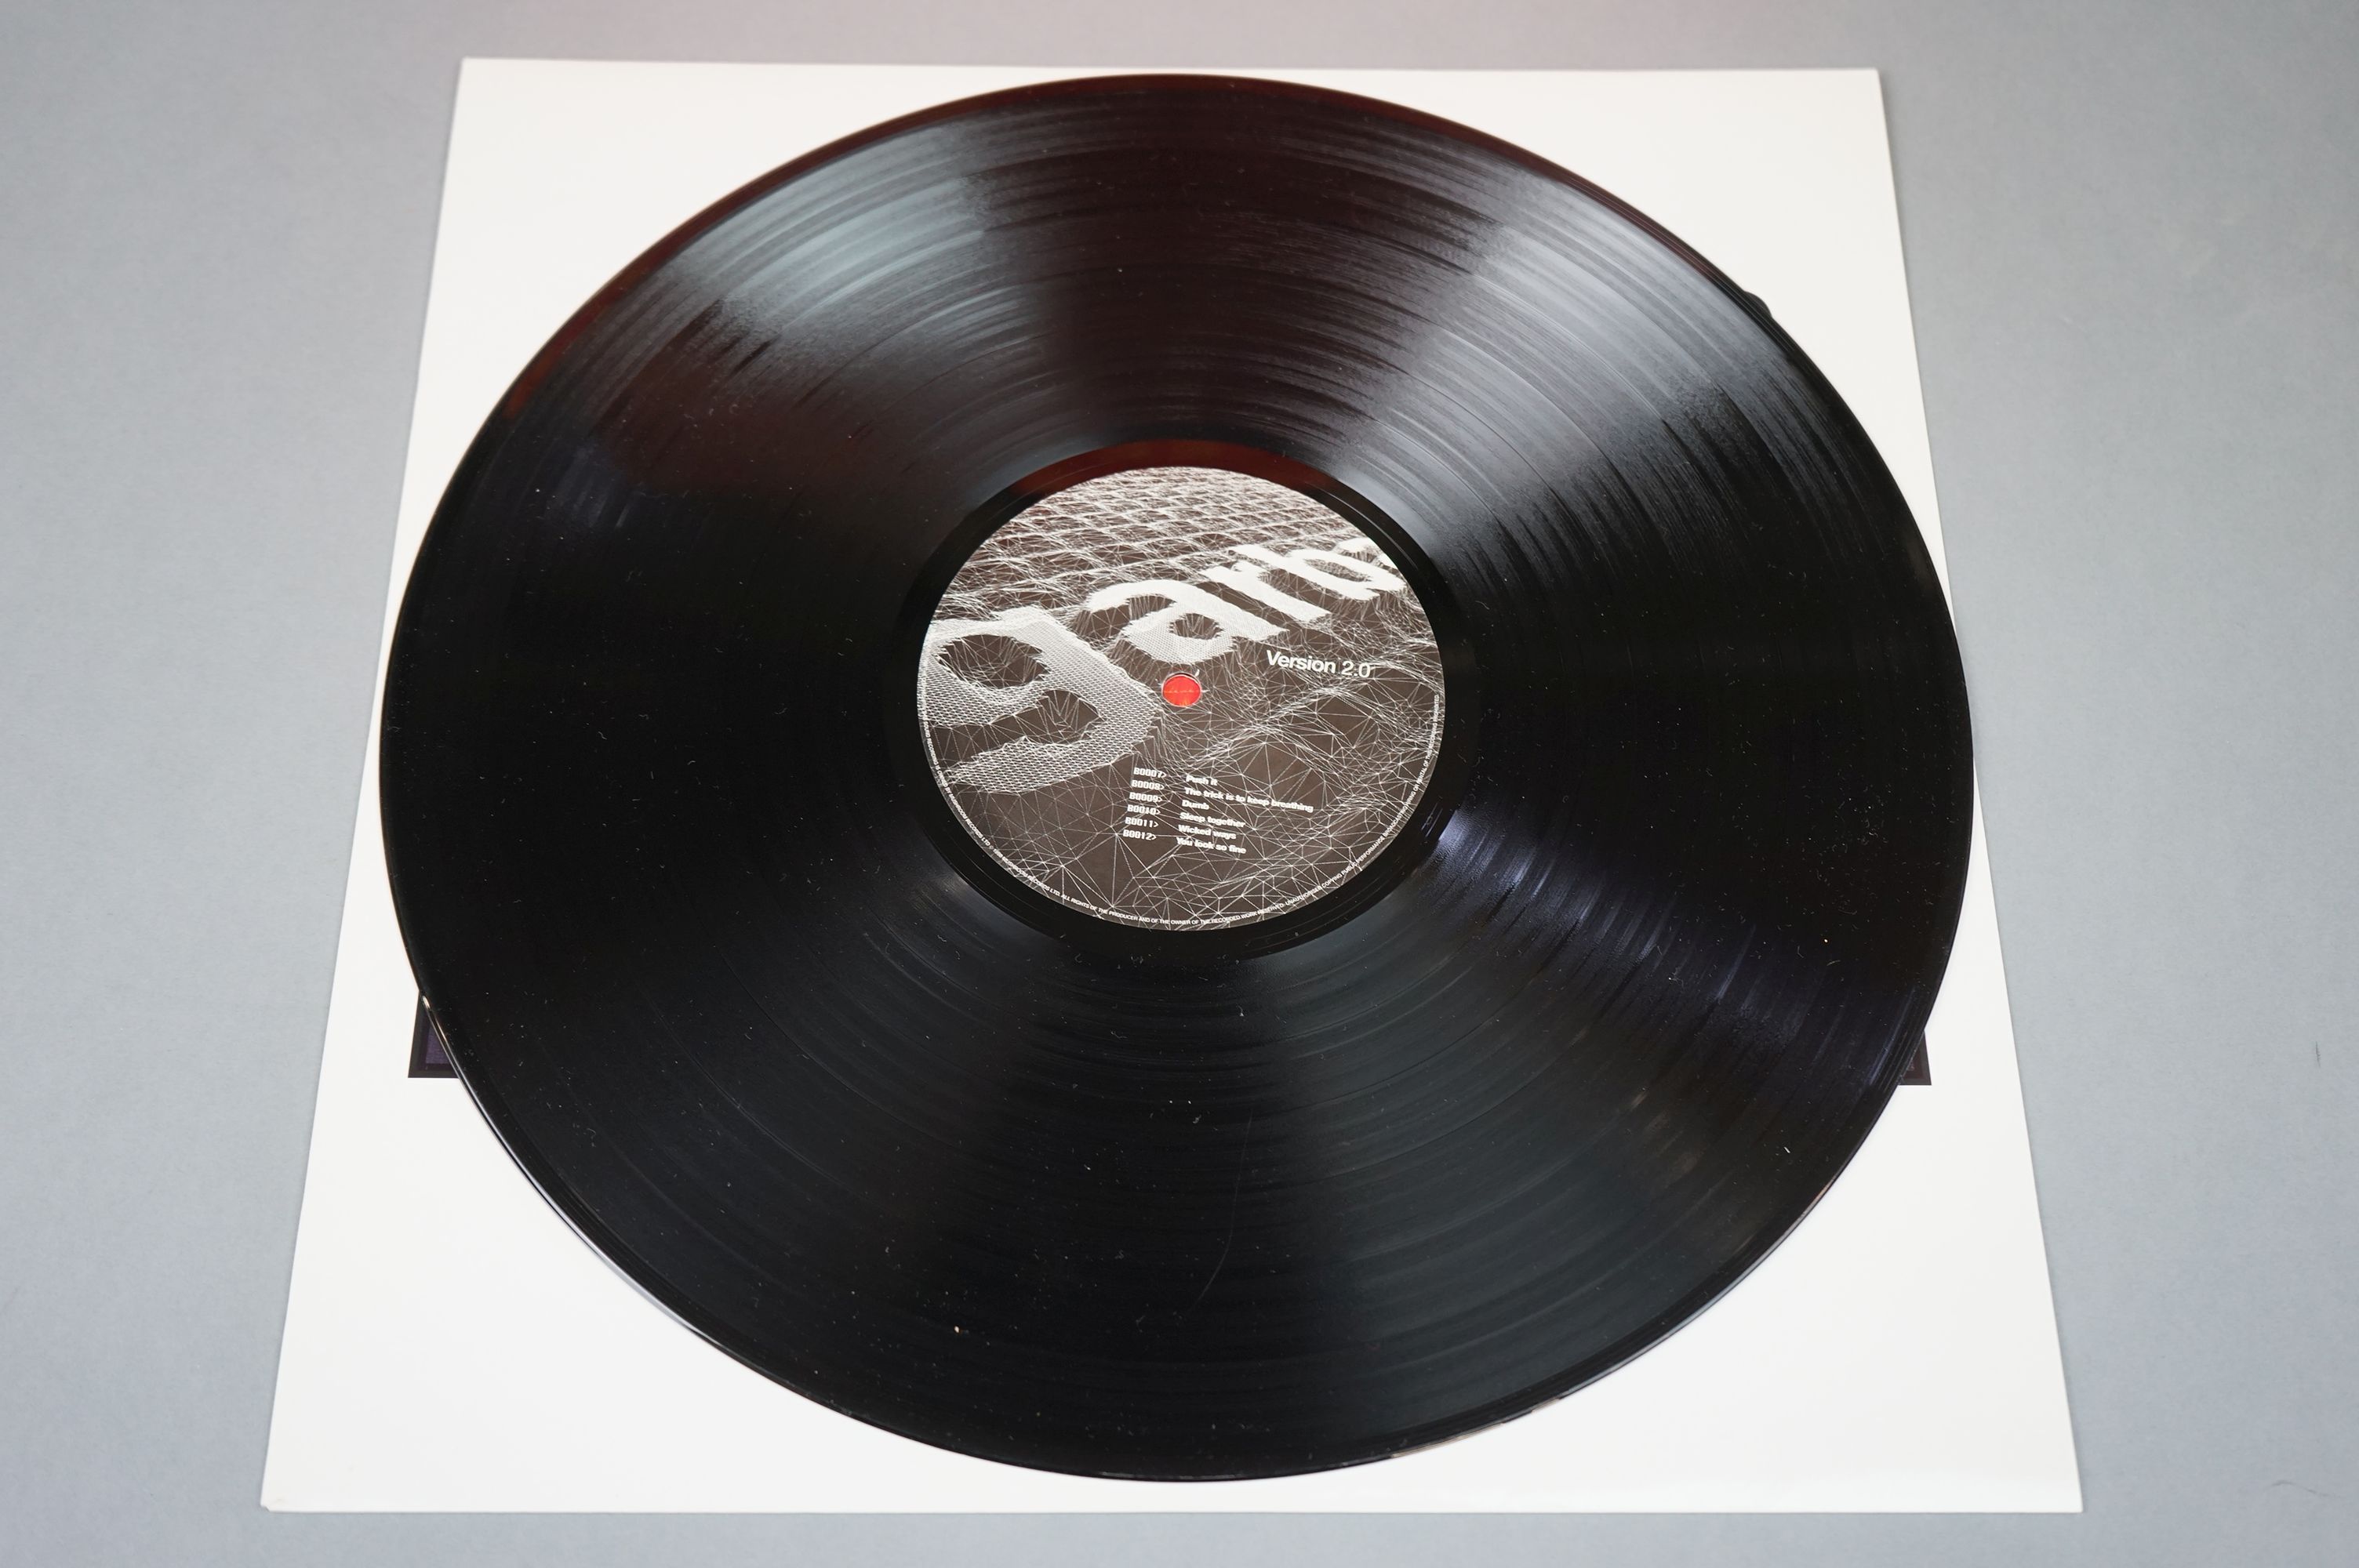 Vinyl - Garbage Version 2.0 LP on Mushroom MUSH29LP, with inner sleeve, sleeve vg+, vinyl ex - Image 7 of 8